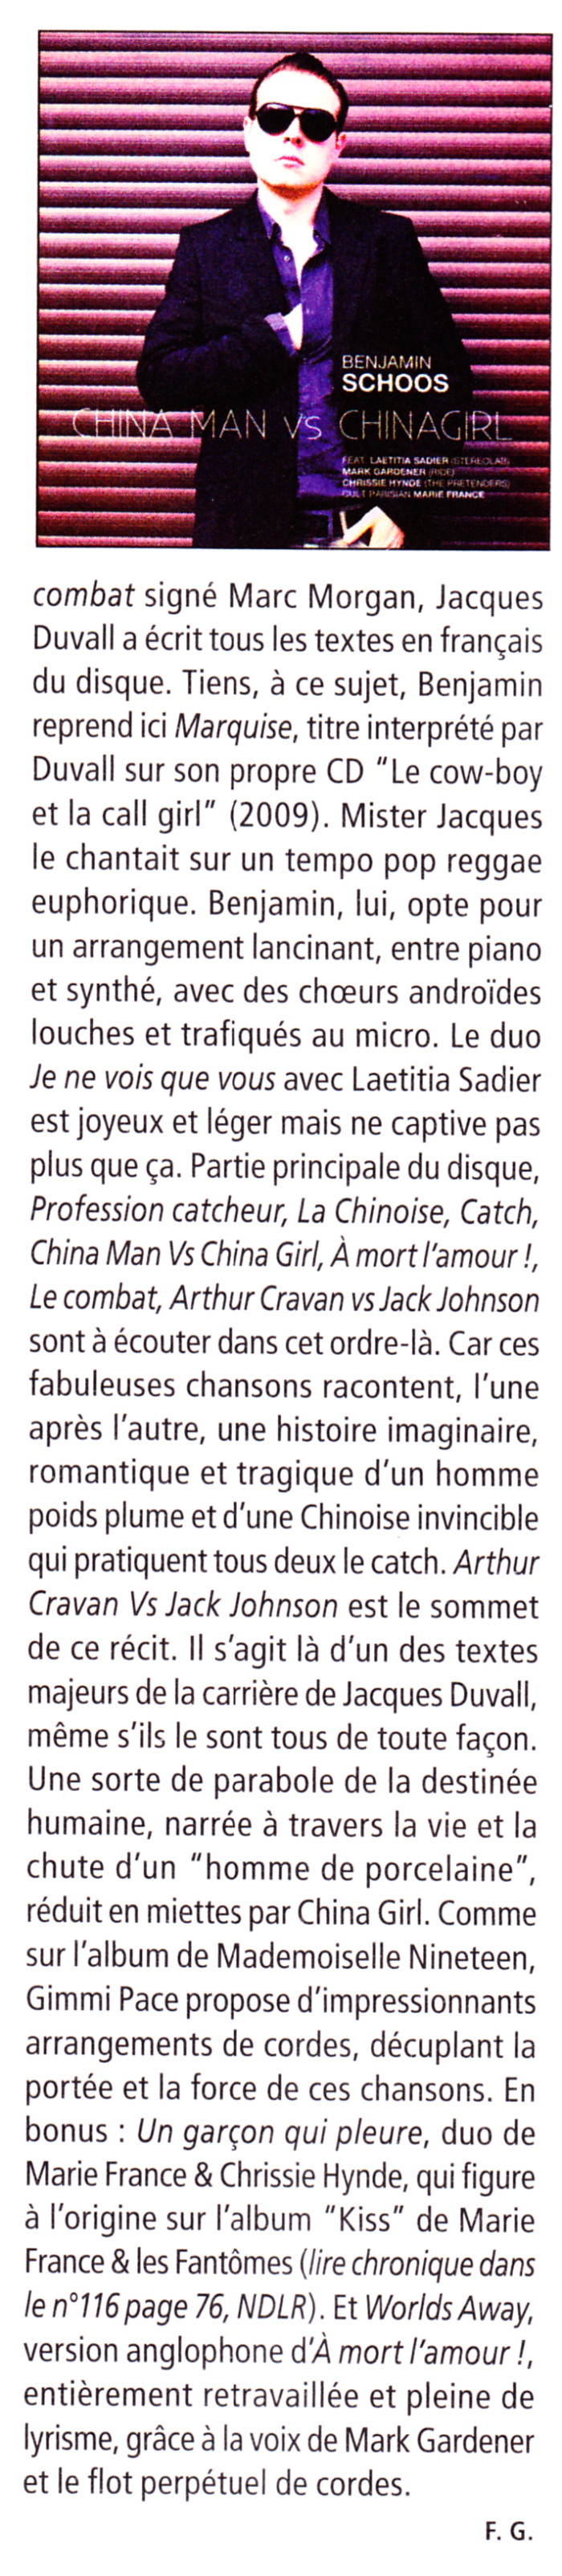 MARIE FRANCE & LES FANTÔMES jouent l'album "39° de fièvre" 18/05/2013 Réservoir (Paris) : compte rendu 13111102562416724011722798